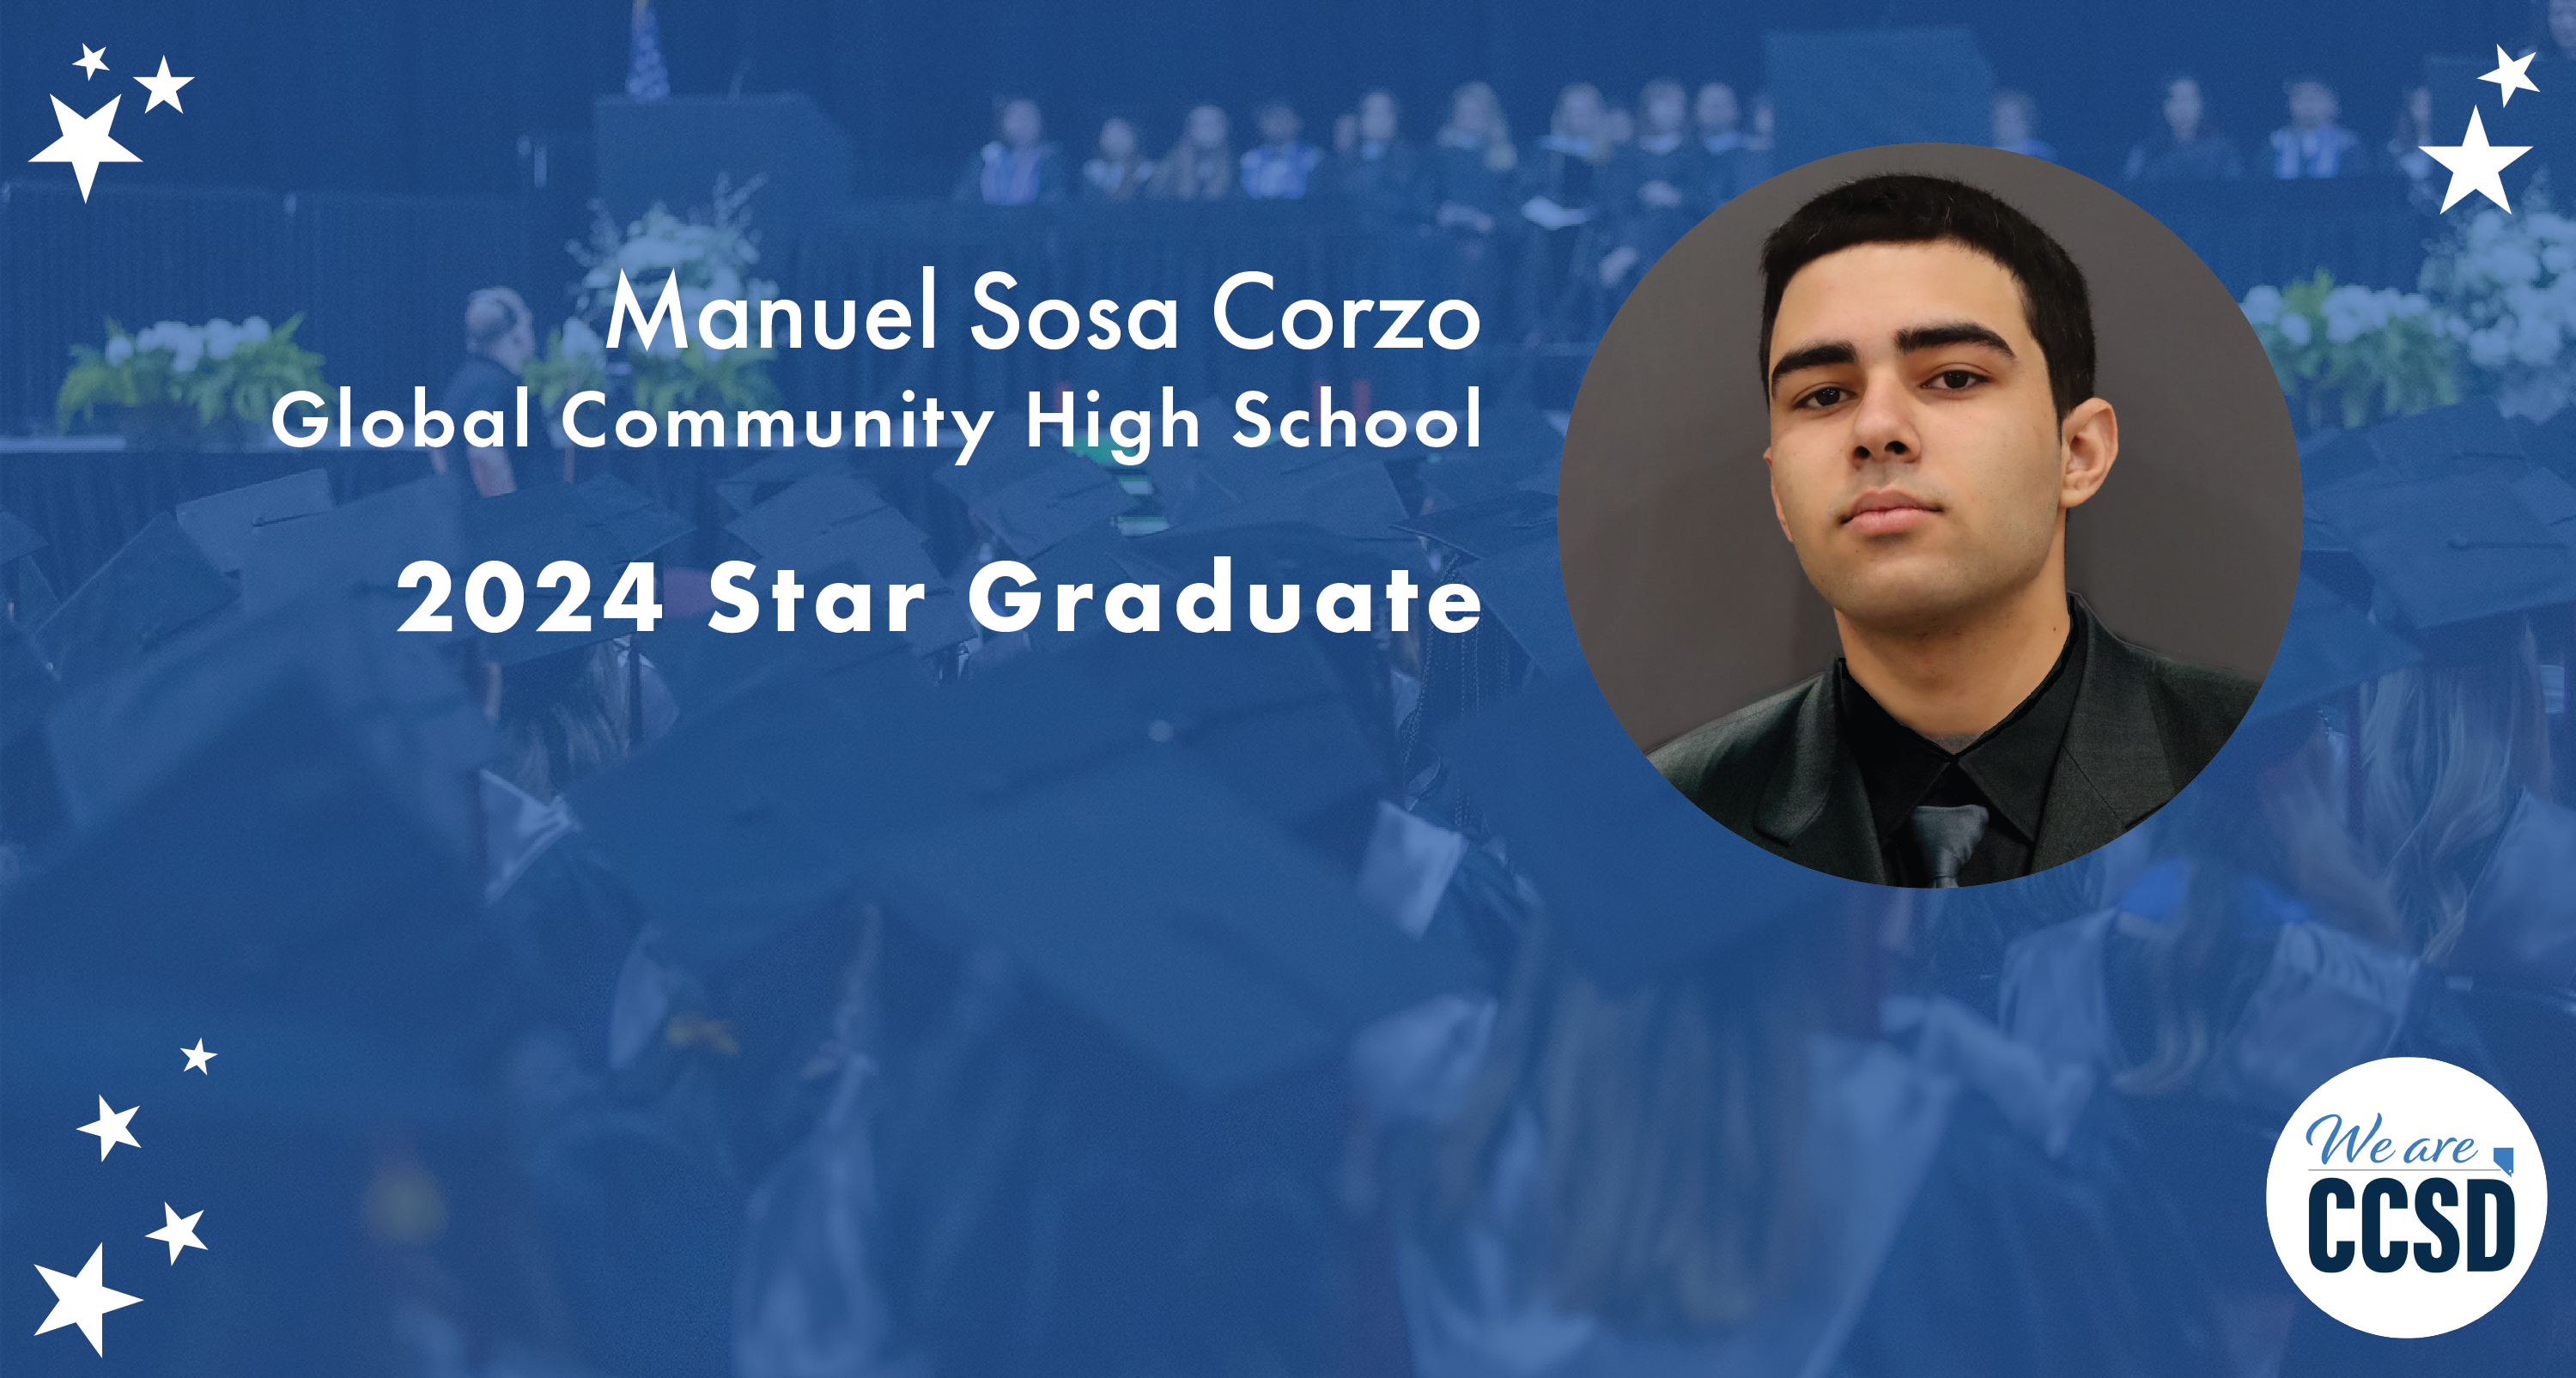 Star Grad – Global Community High School